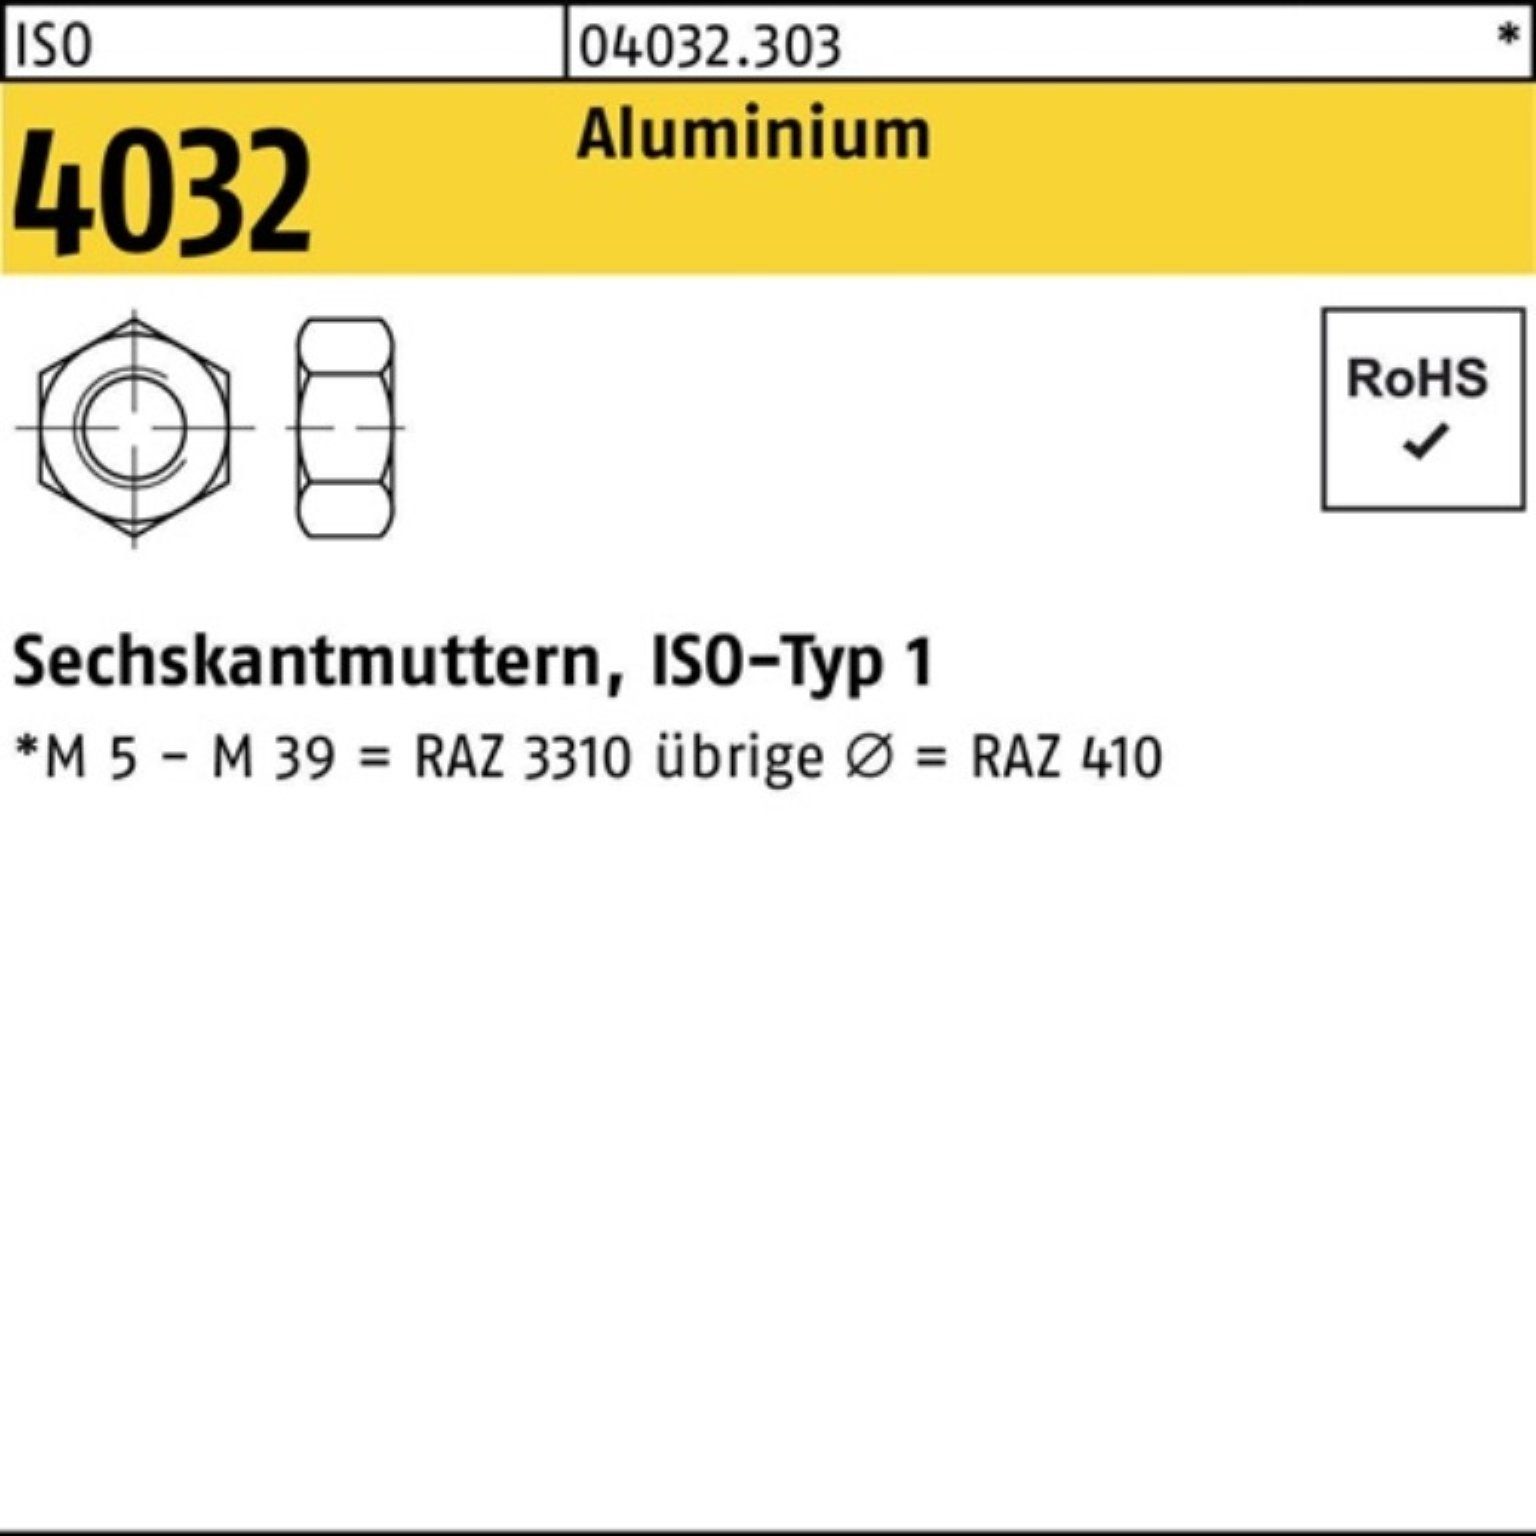 Bufab Muttern 100er Pack Sechskantmutter Stück 4032 M10 Aluminium ISO 100 4032 ISO